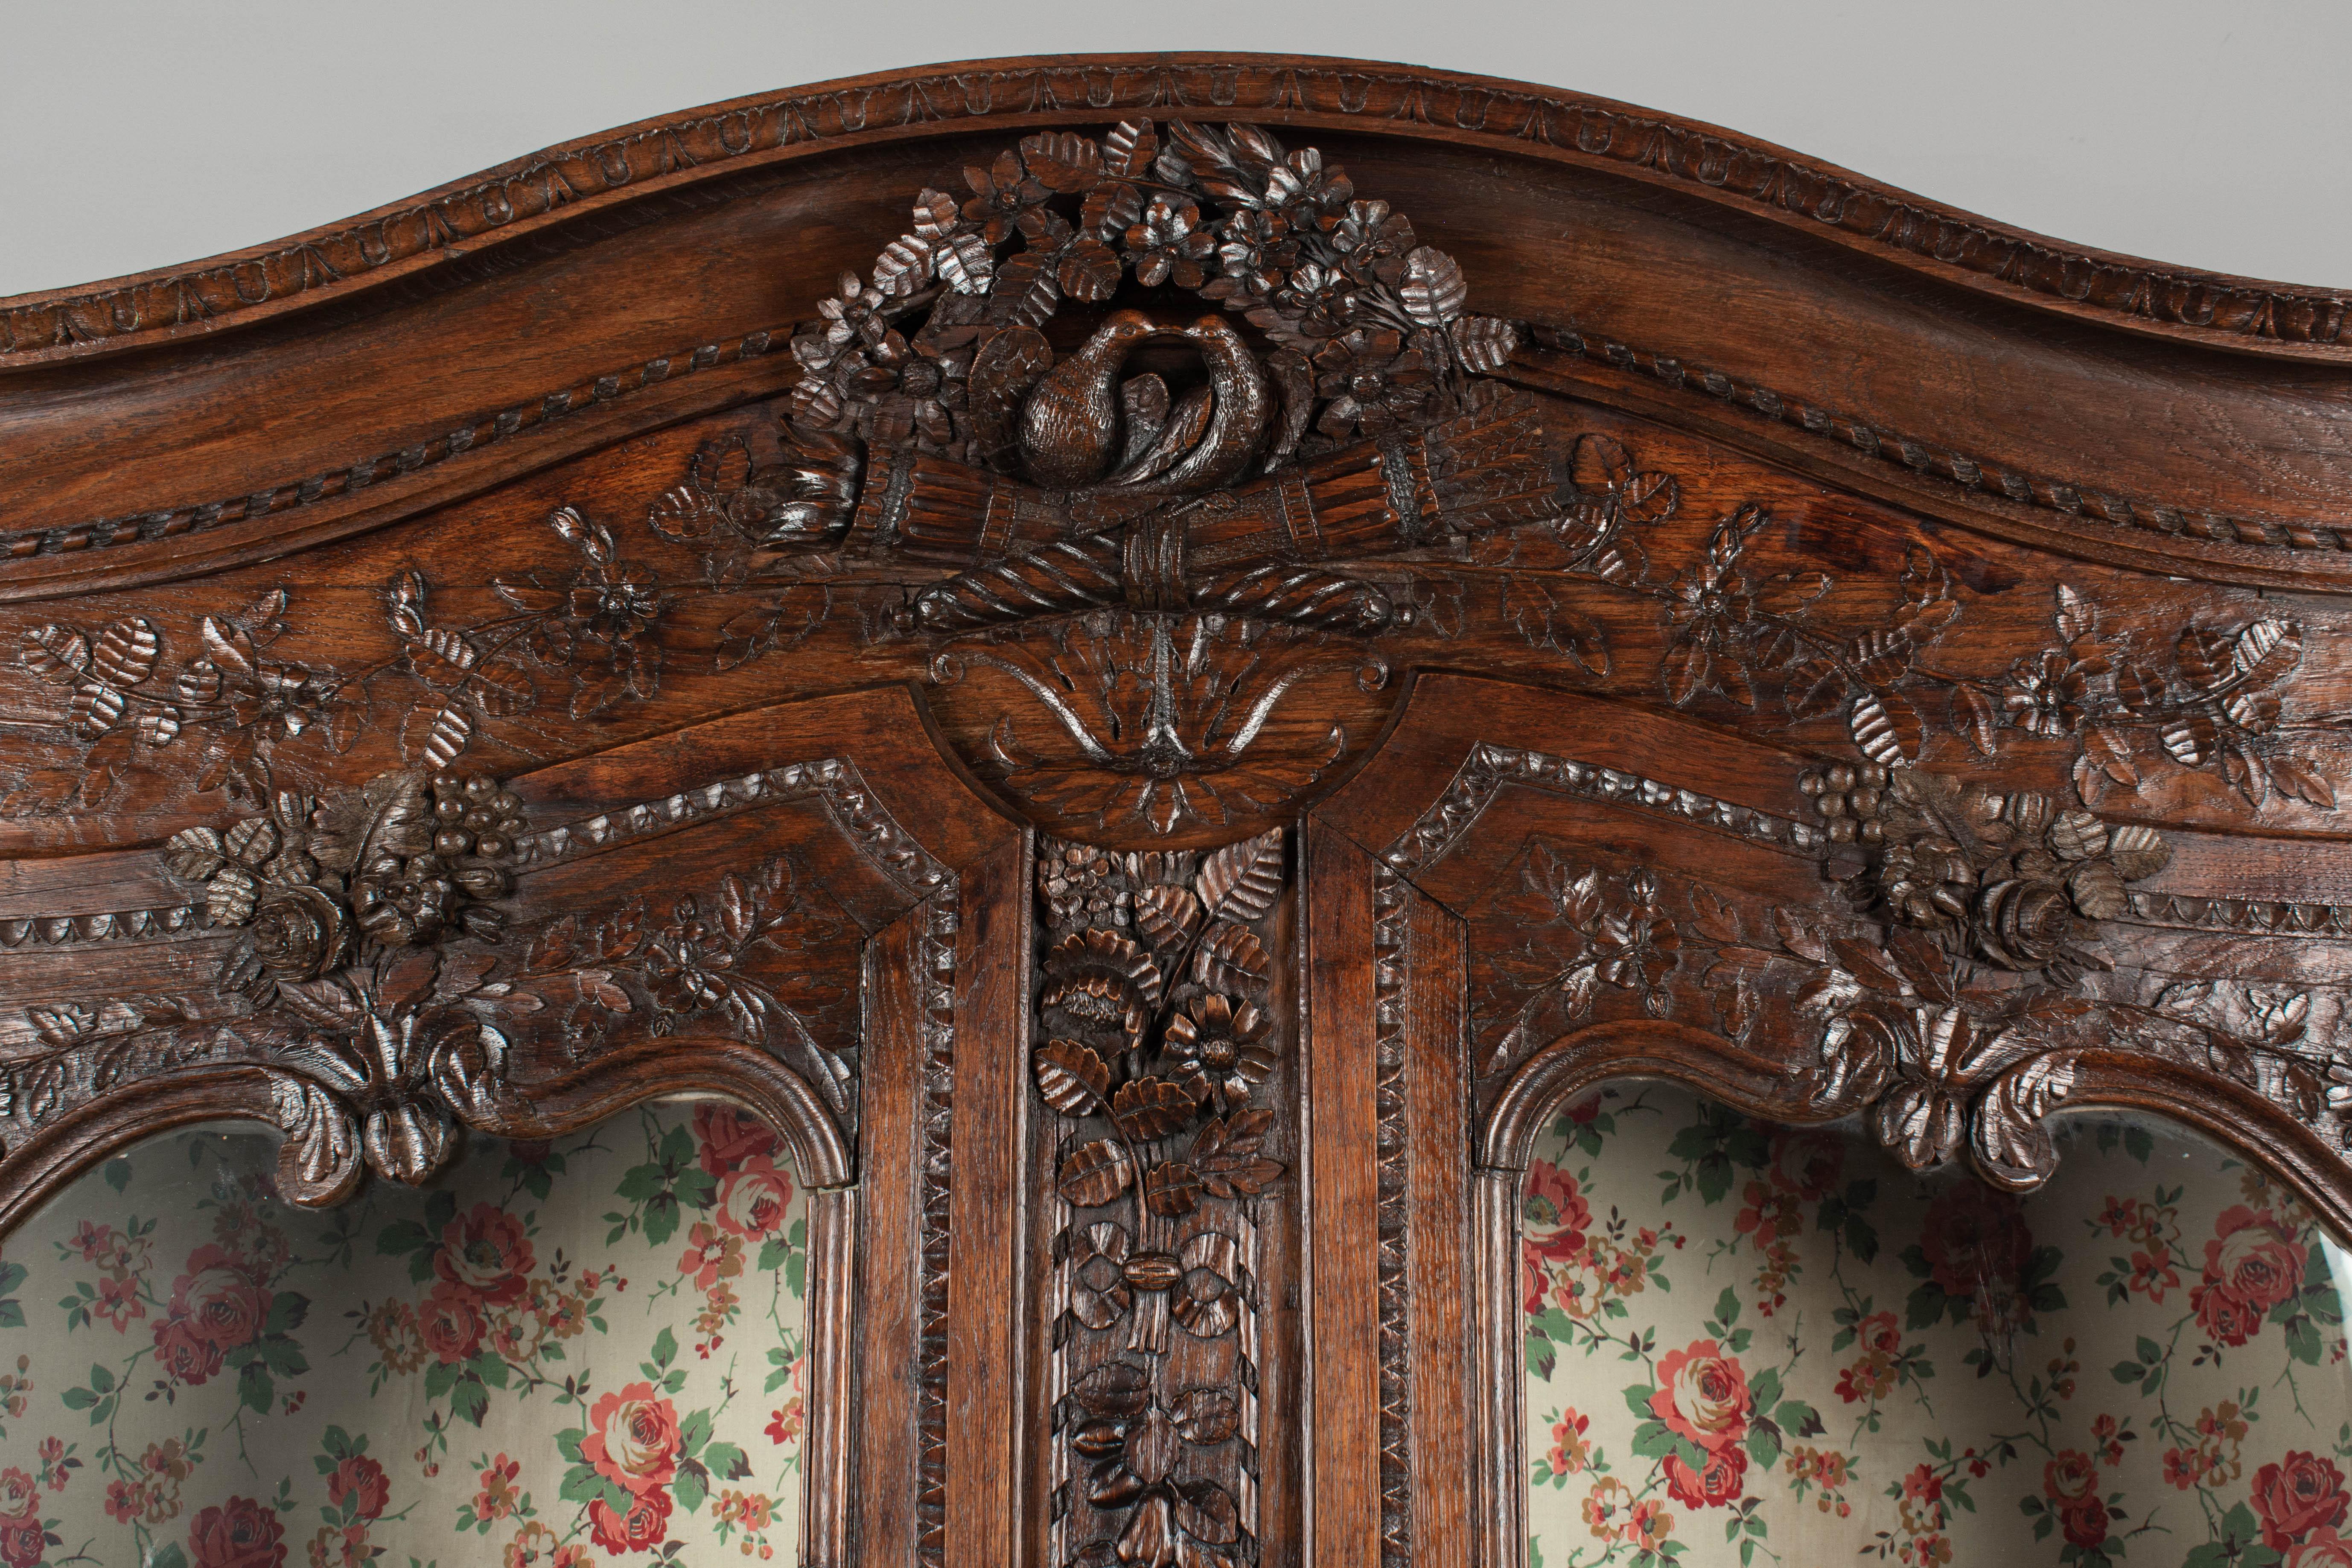 Buffet à deux corps normand de style Louis XV du XVIIIe siècle, en chêne massif sculpté à la main. Il s'agit d'un cadeau de mariage traditionnel, apporté par le marié à sa nouvelle maison, qui comporte de nombreux motifs romantiques. Les sculptures